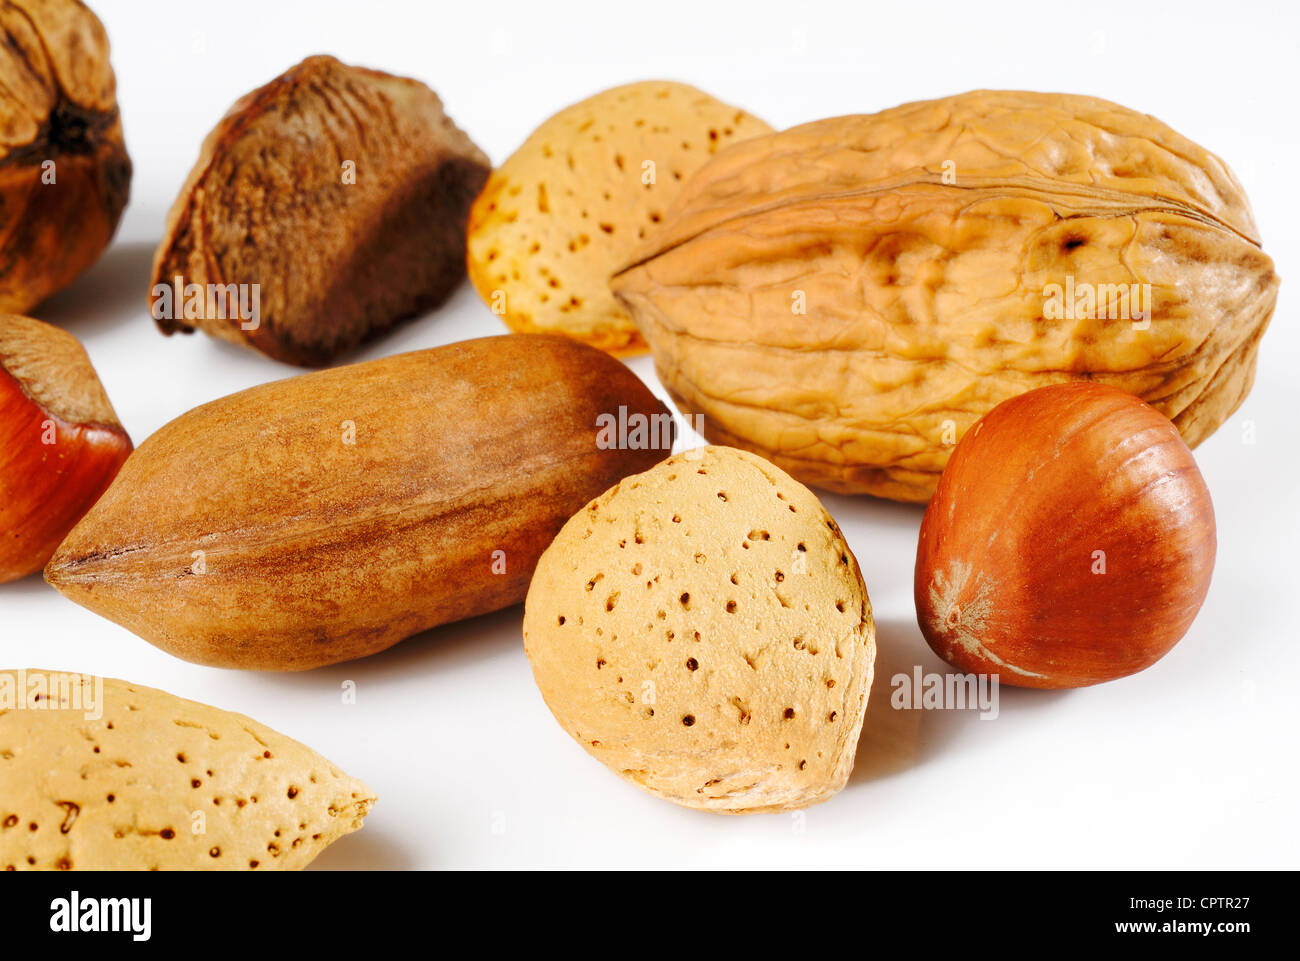 walnut almond and hazelnut Stock Photo